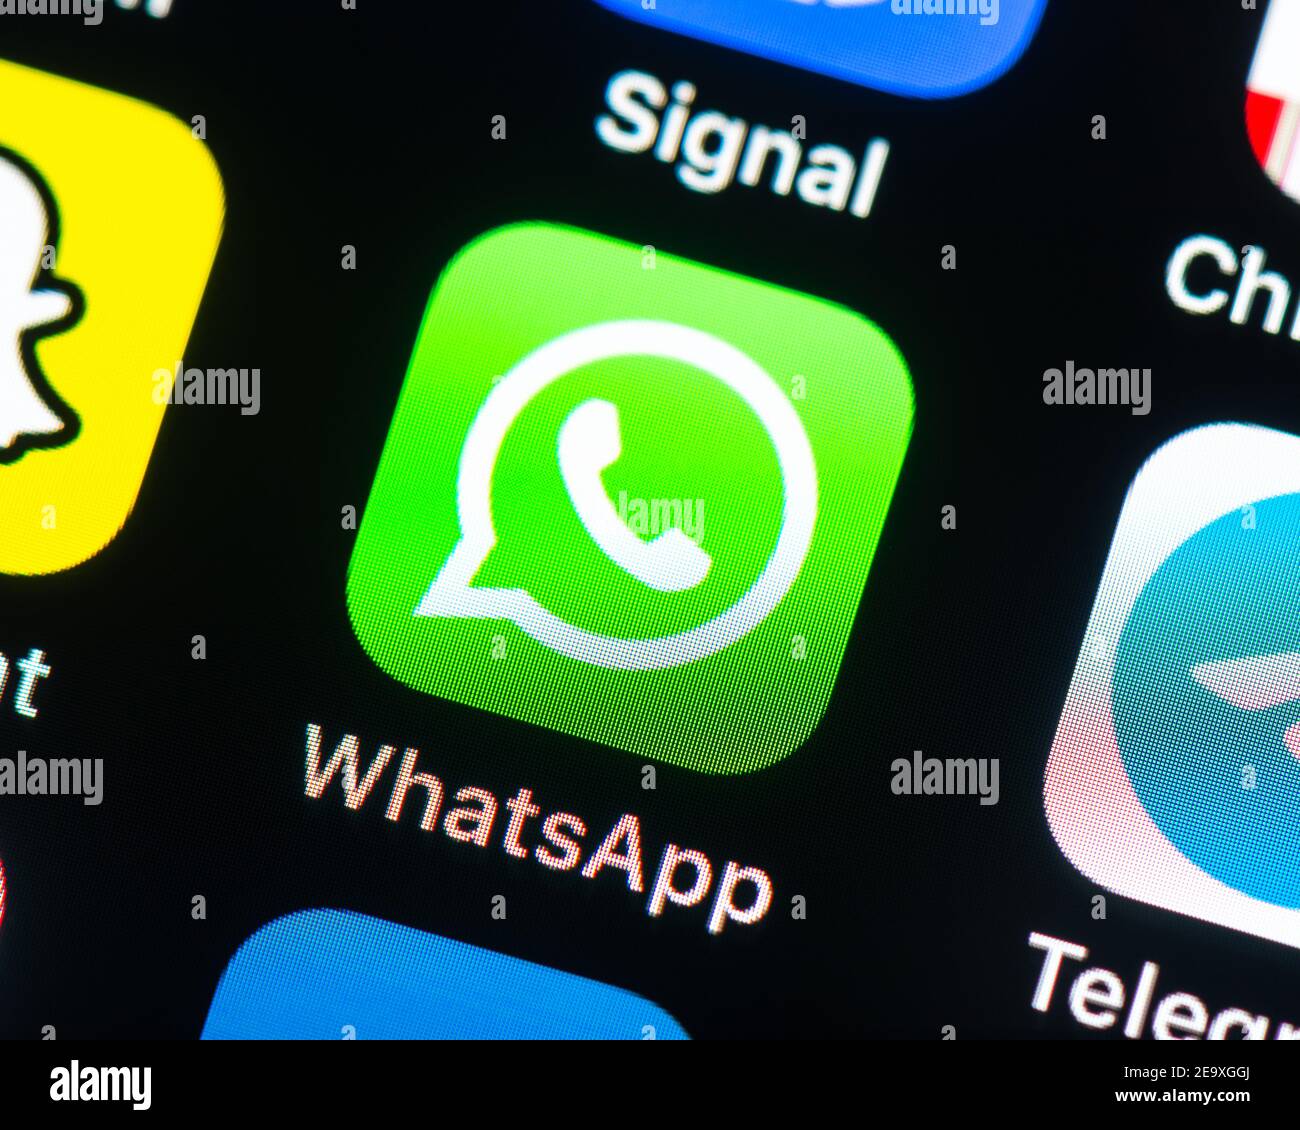 Icône de l'application WhatsApp Messenger sur l'écran de l'iPhone. WhatsApp Messenger est un service de messagerie multi plates-formes gratuit américain appartenant à Facebook. Banque D'Images